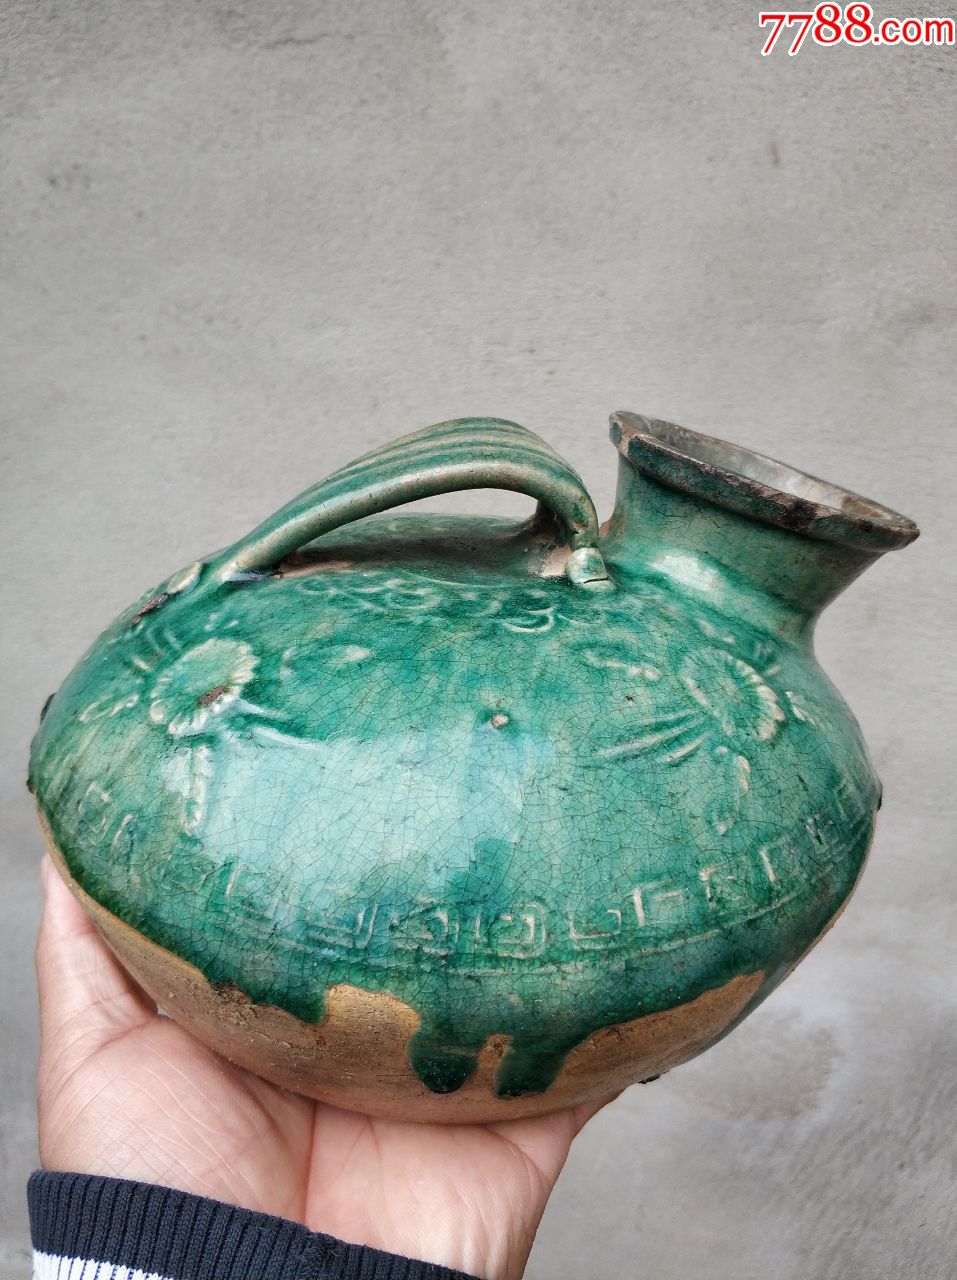 陶器夜壶,小磕,没有冲线,高13厘米,直径20厘米